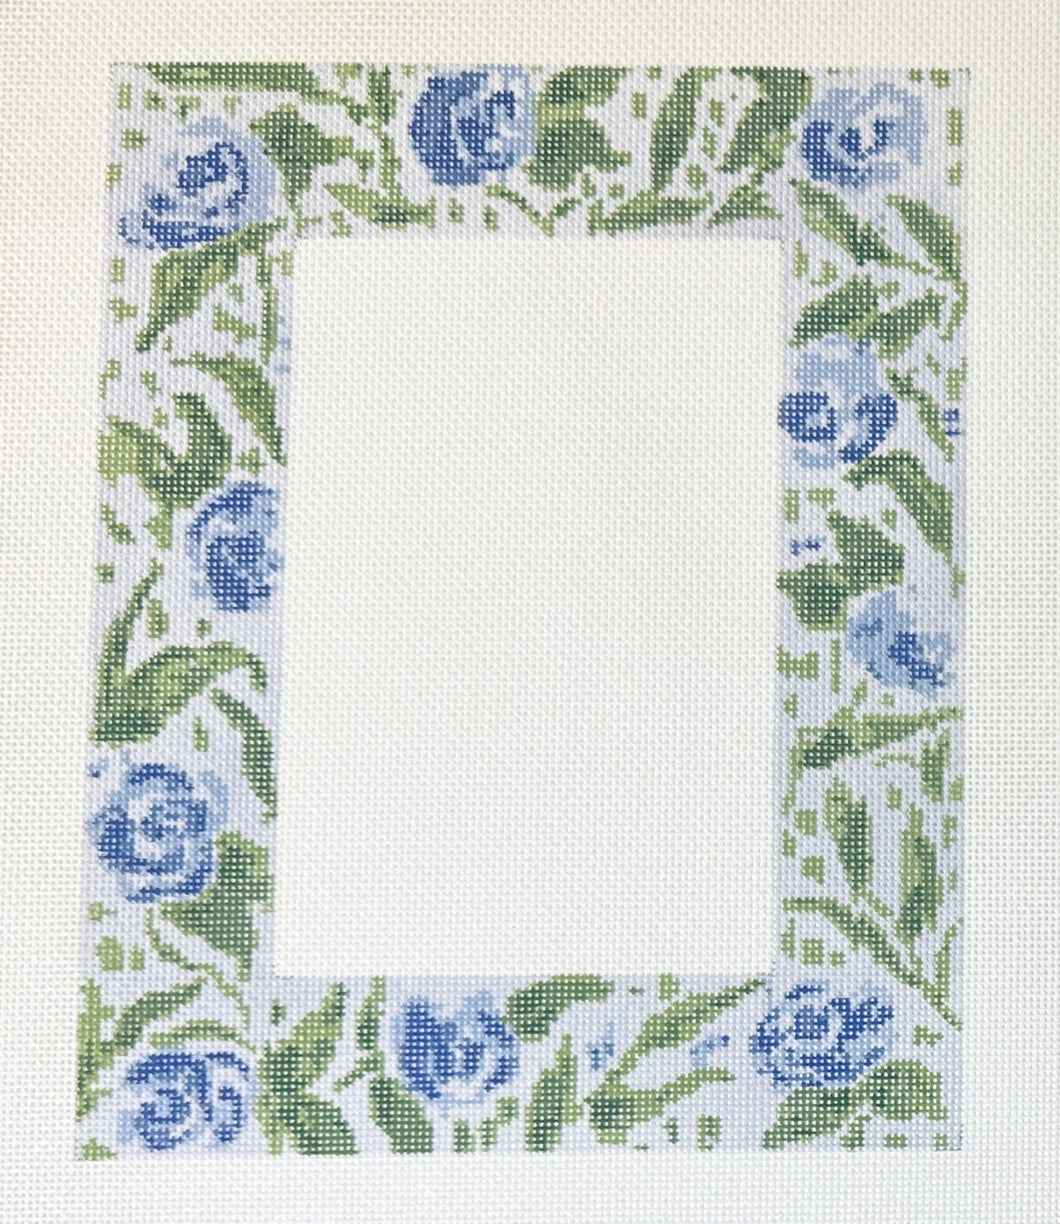 CM53 blue floral frame